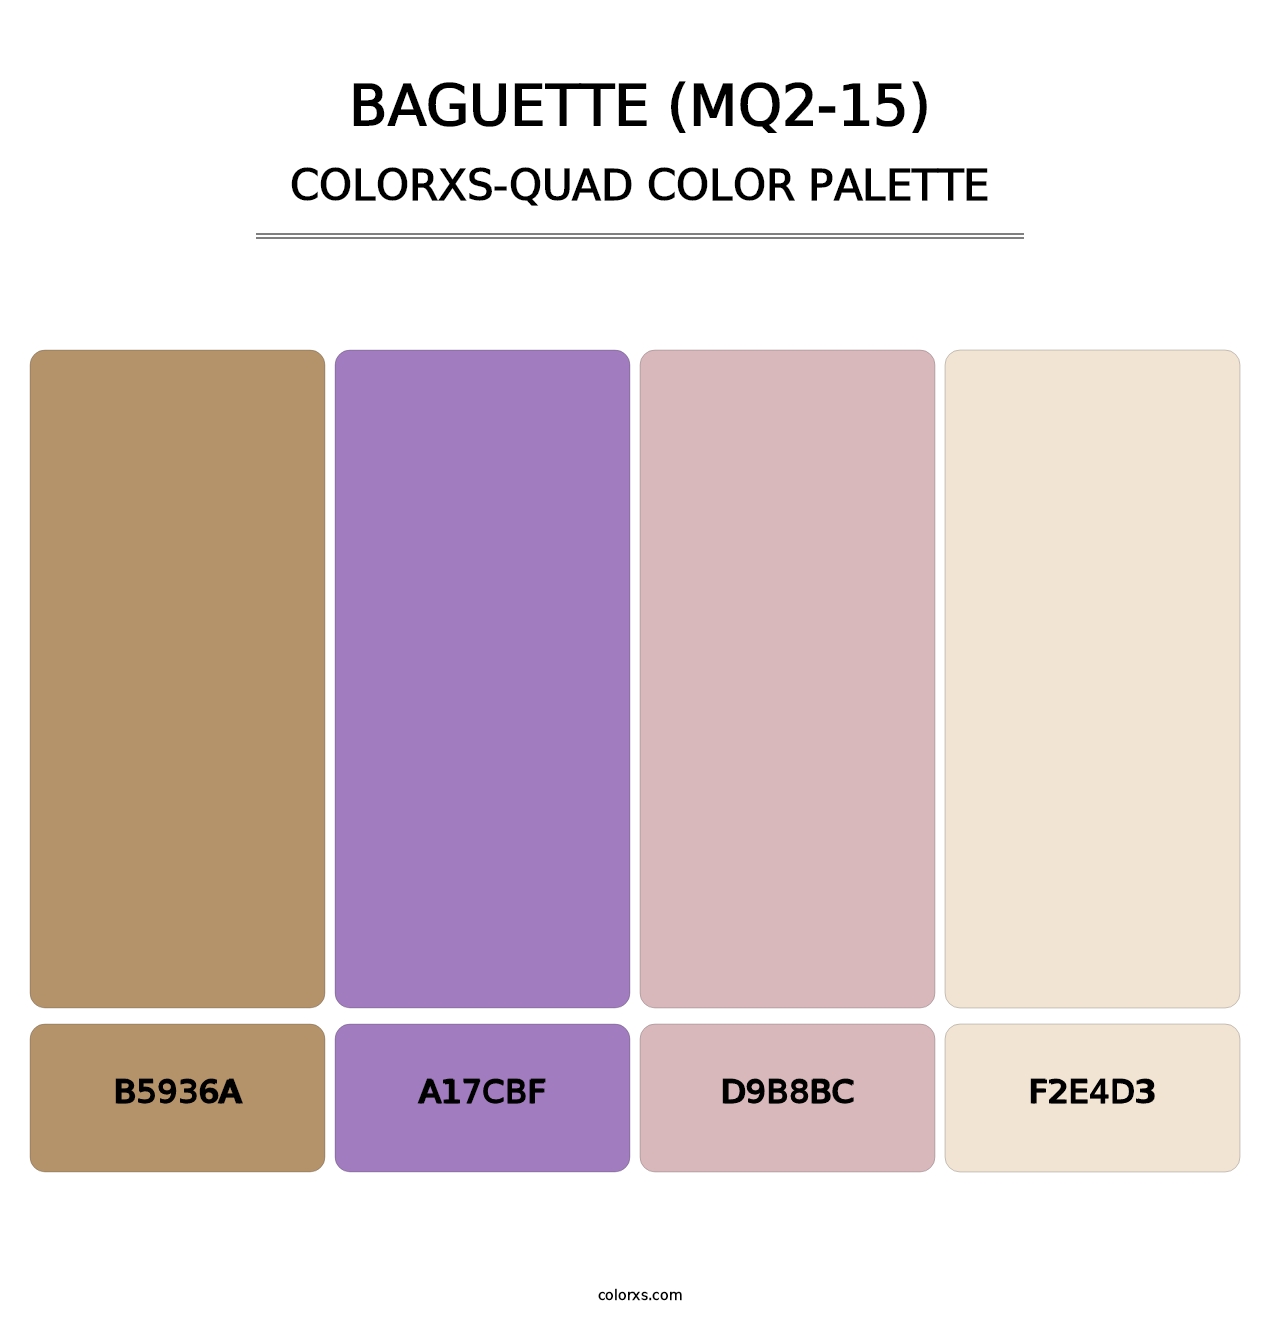 Baguette (MQ2-15) - Colorxs Quad Palette